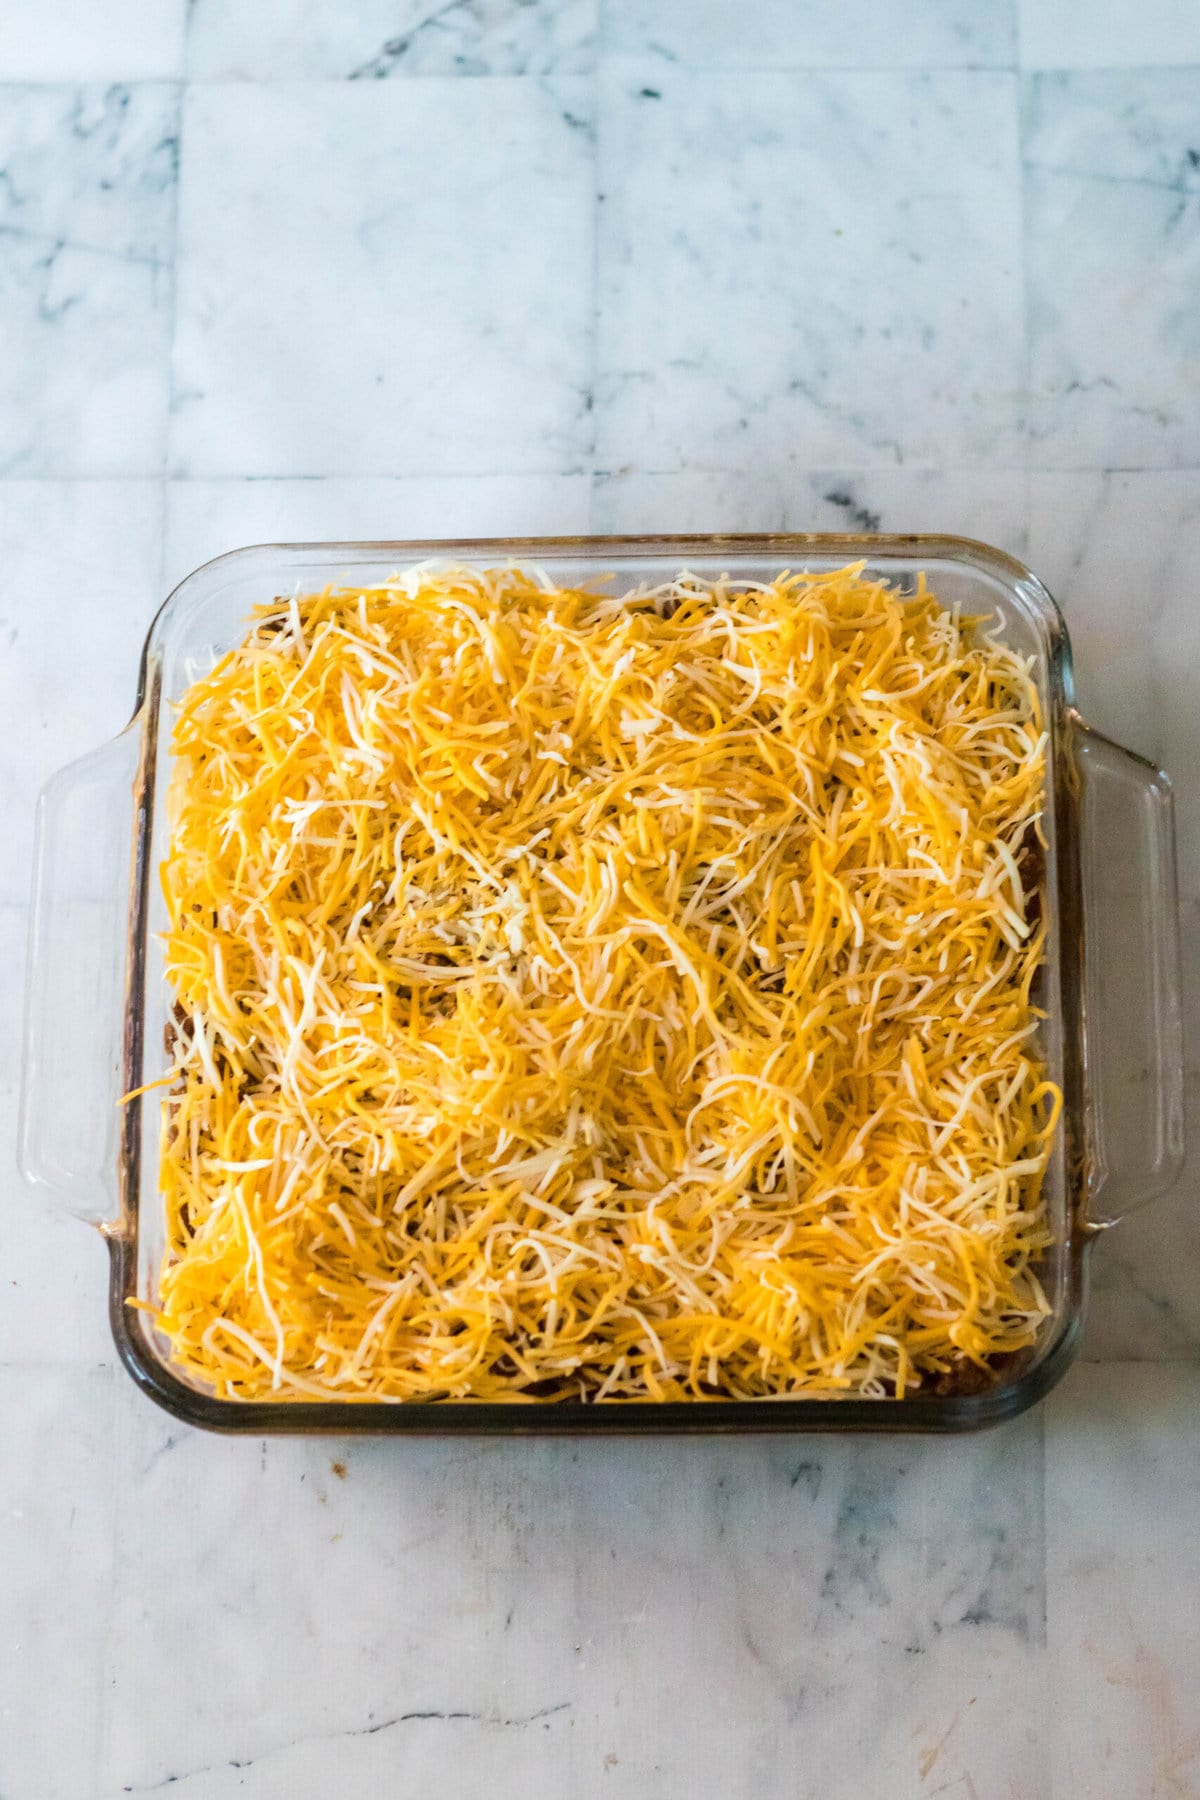 添加一层切碎的奶酪。